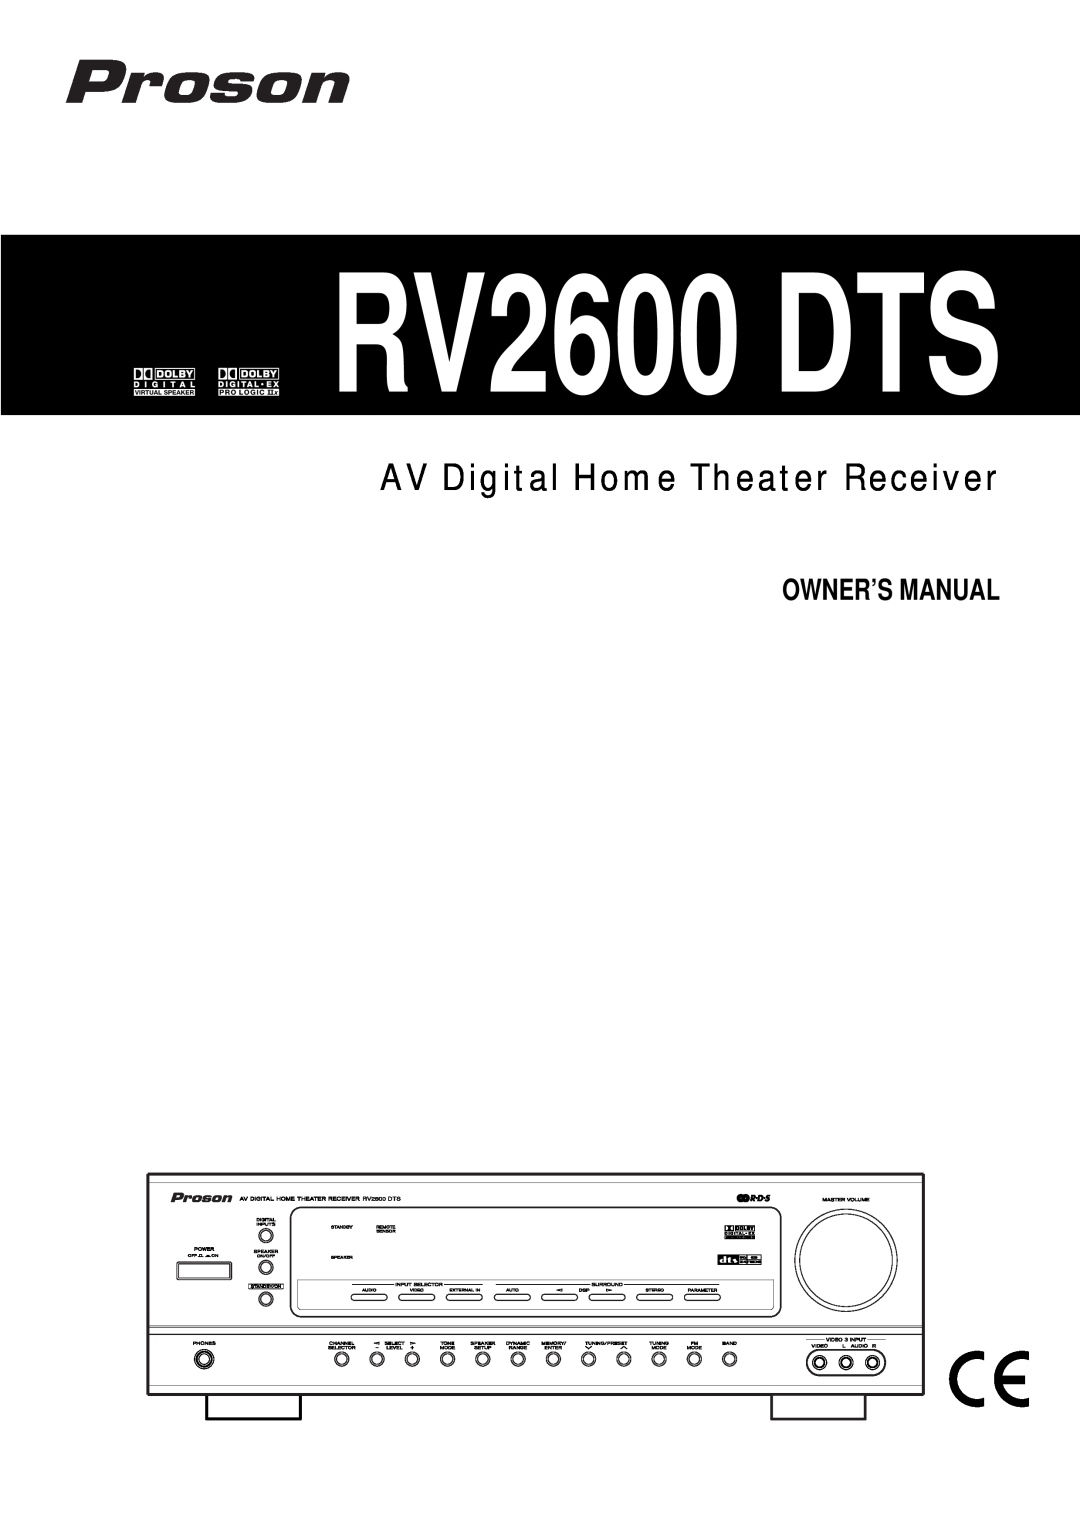 Proson rv2600 dts owner manual RV2600 DTS, AV Digital Home Theater Receiver 